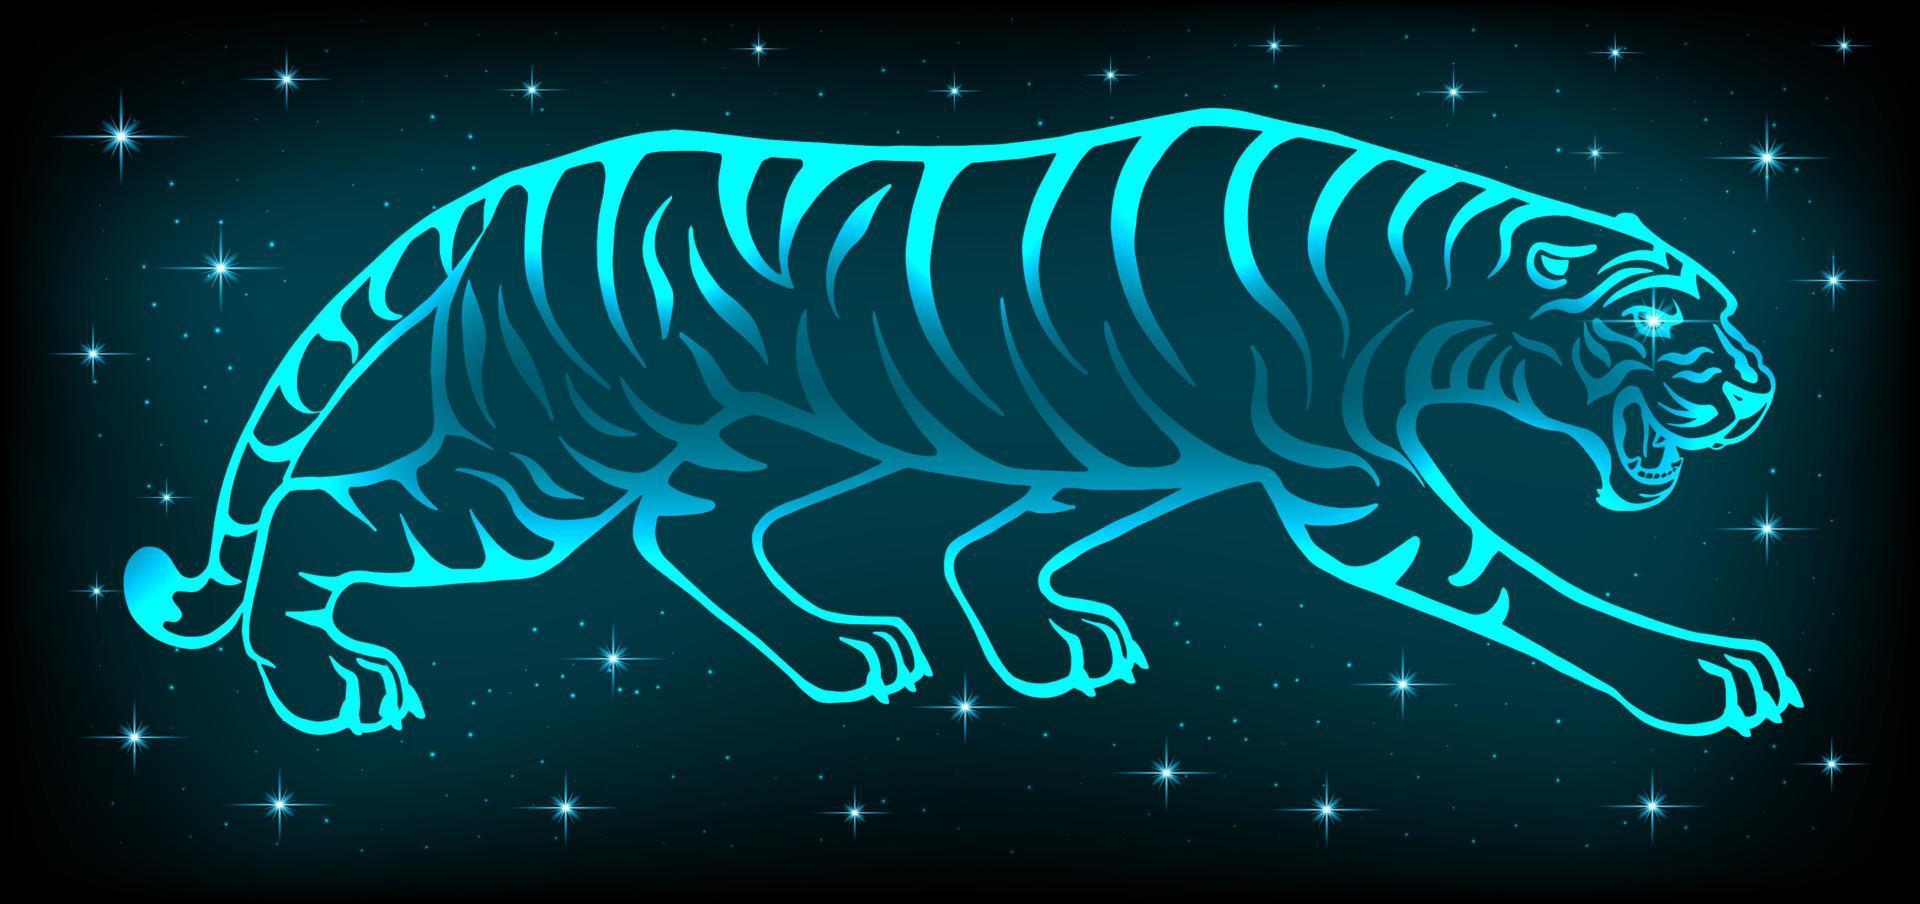 tigre de neón 2022. símbolo del año nuevo según el calendario oriental. depredador salvaje brillante sobre un fondo oscuro. para postales, calendarios navideños. vector. vector